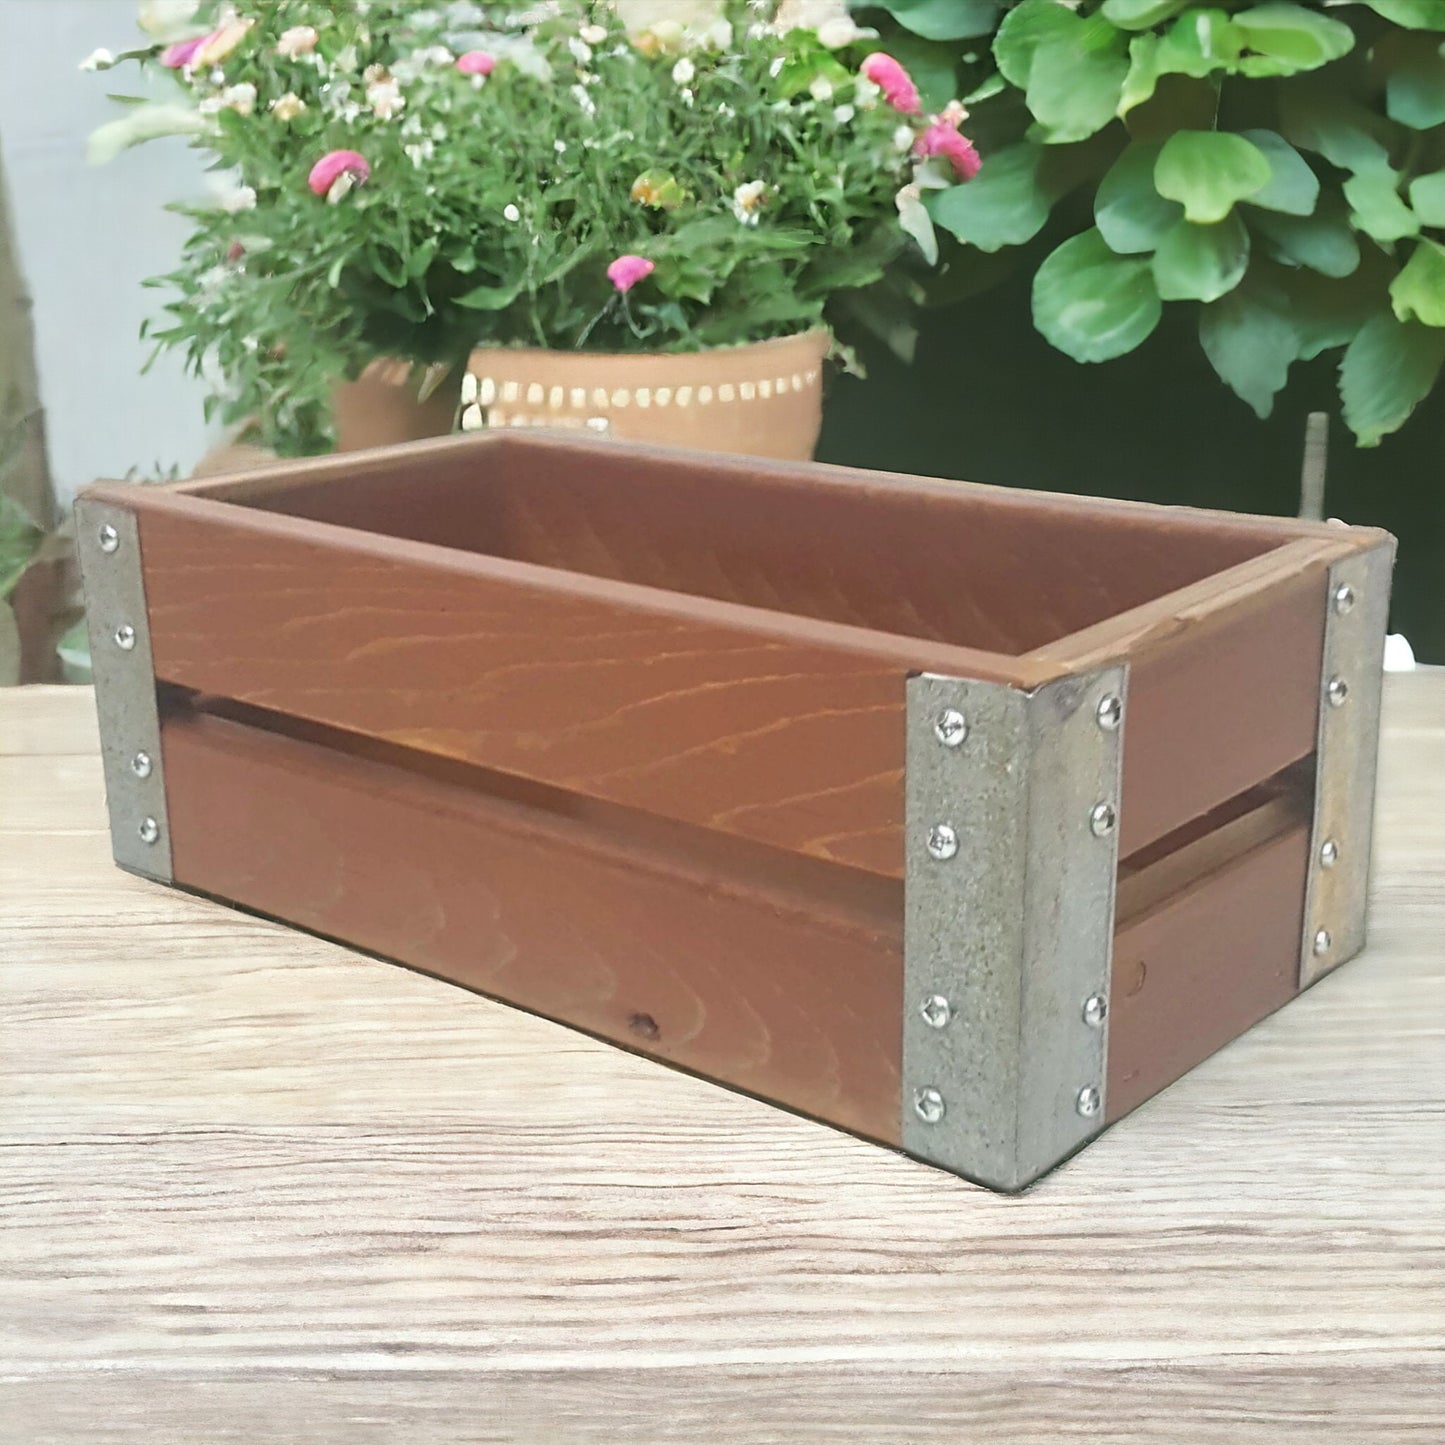 Wooden Crate Utensil Holder Kitchen Organizer